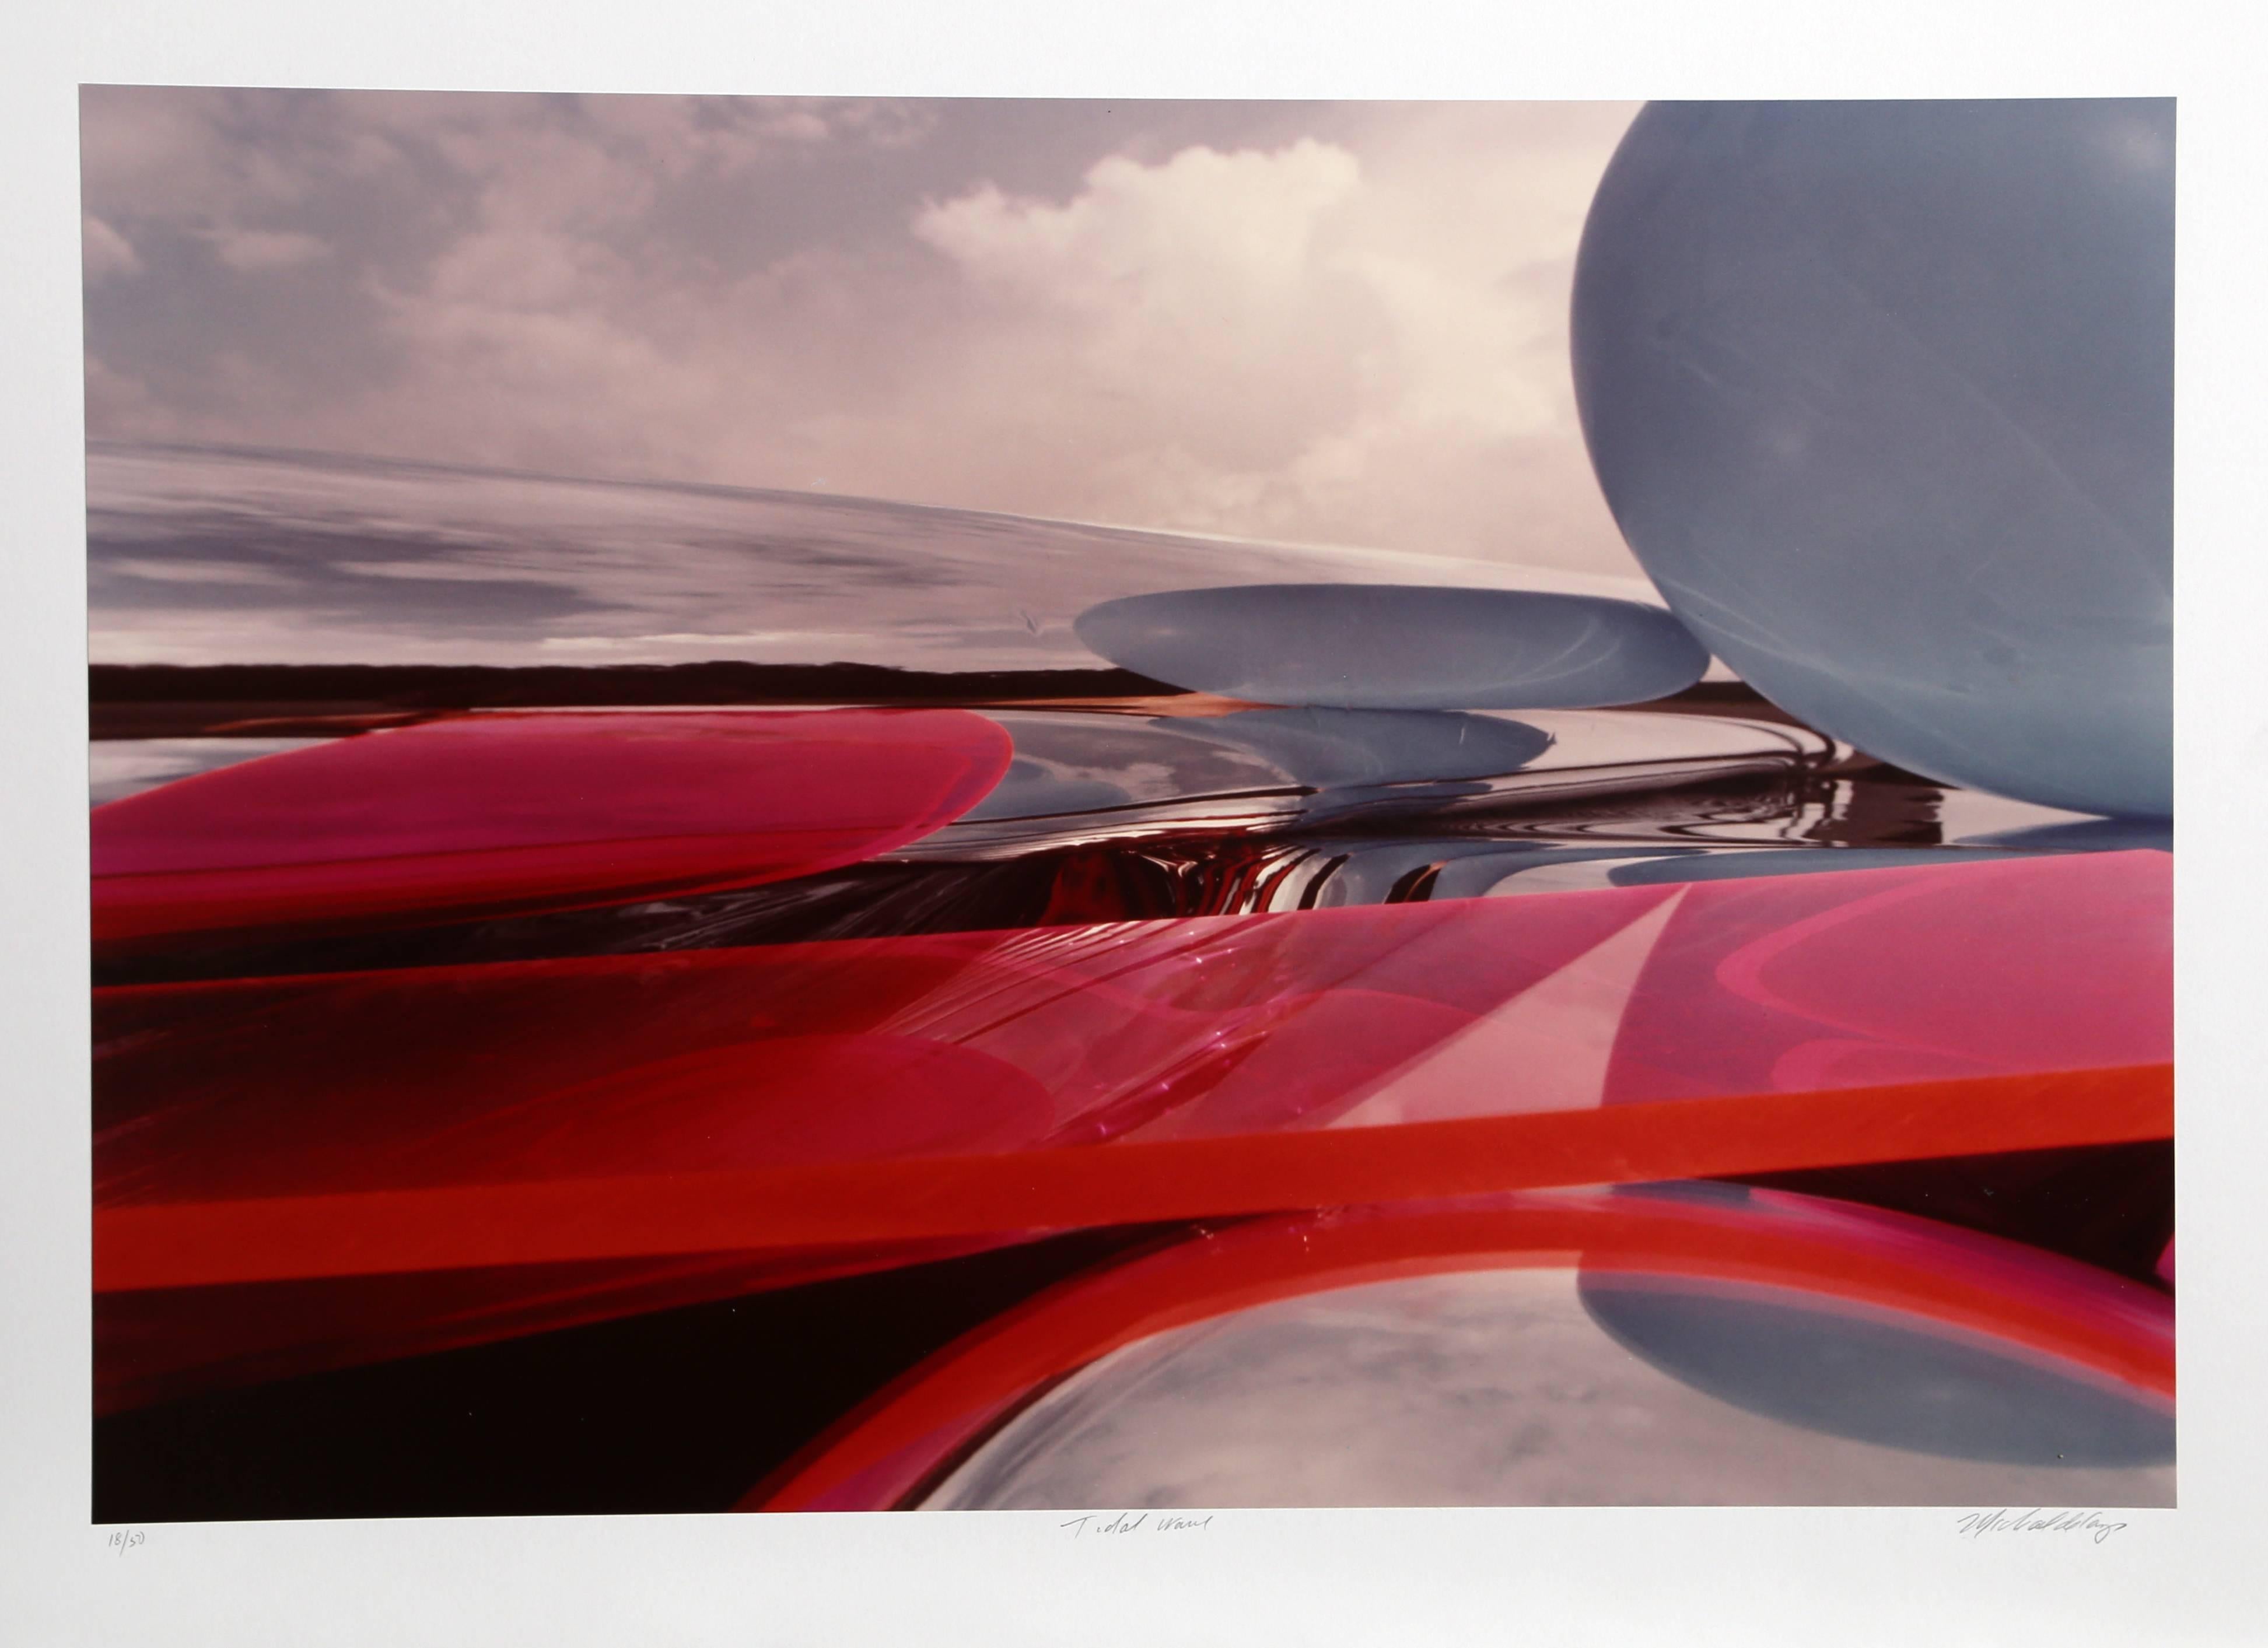 Cette photographie a été réalisée par l'artiste américain Michael DeCamp, passionné de plongée sous-marine. Les photos abstraites de DeCamp sont énigmatiques et les interactions entre les formes et les couleurs sont à la fois familières et étranges.